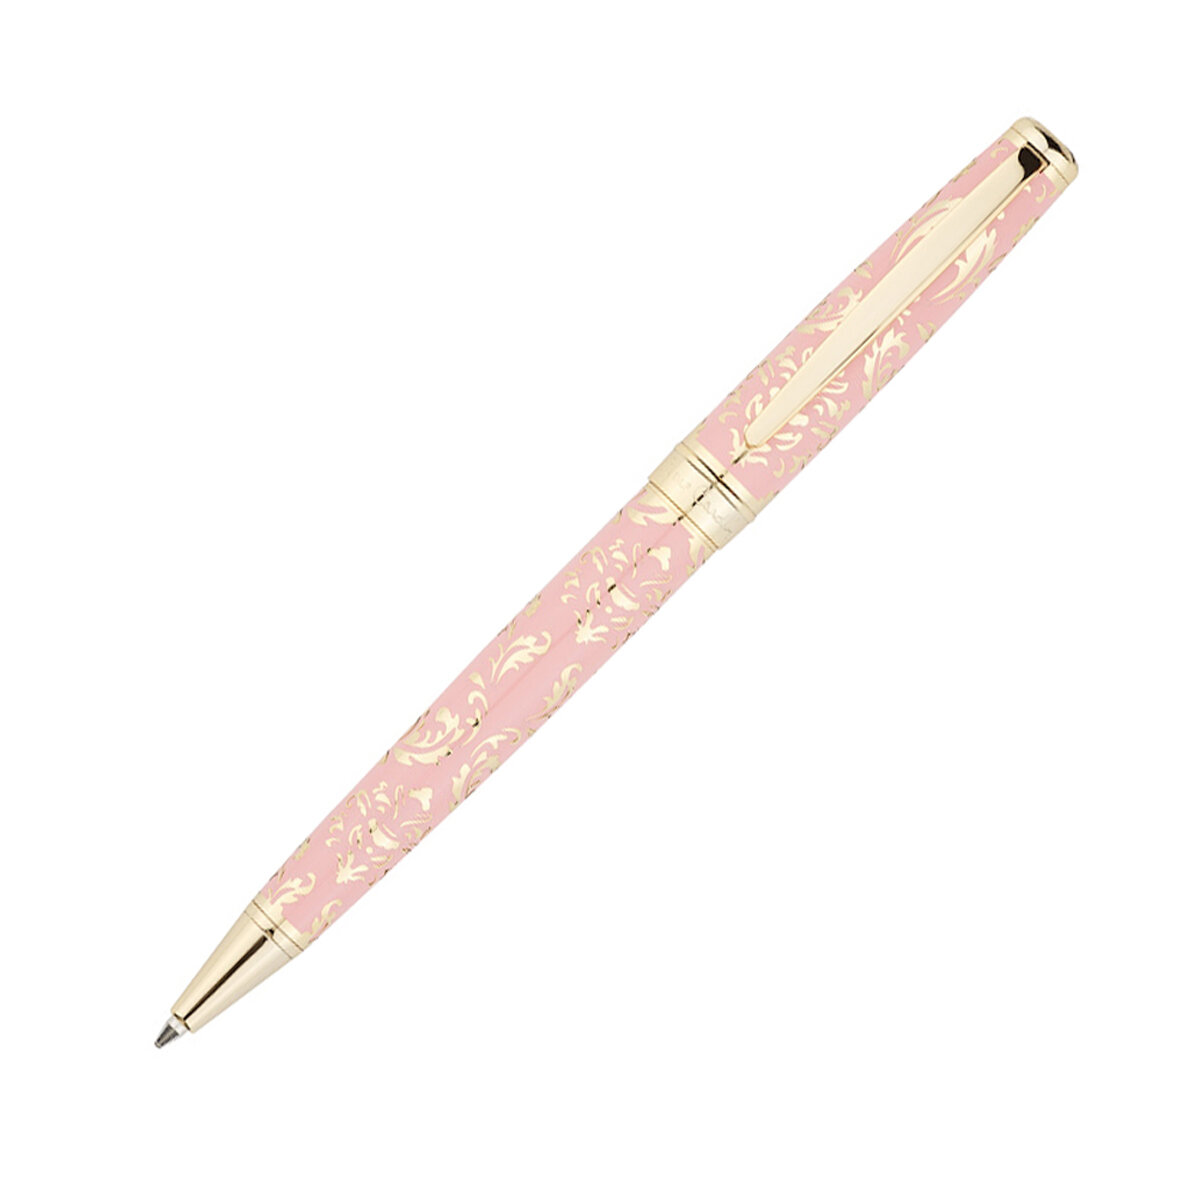 Ручка шариковая Pierre Cardin RENAISSANCE. Цвет - розовый и золотистый. Упаковка В-2, PC8300BP